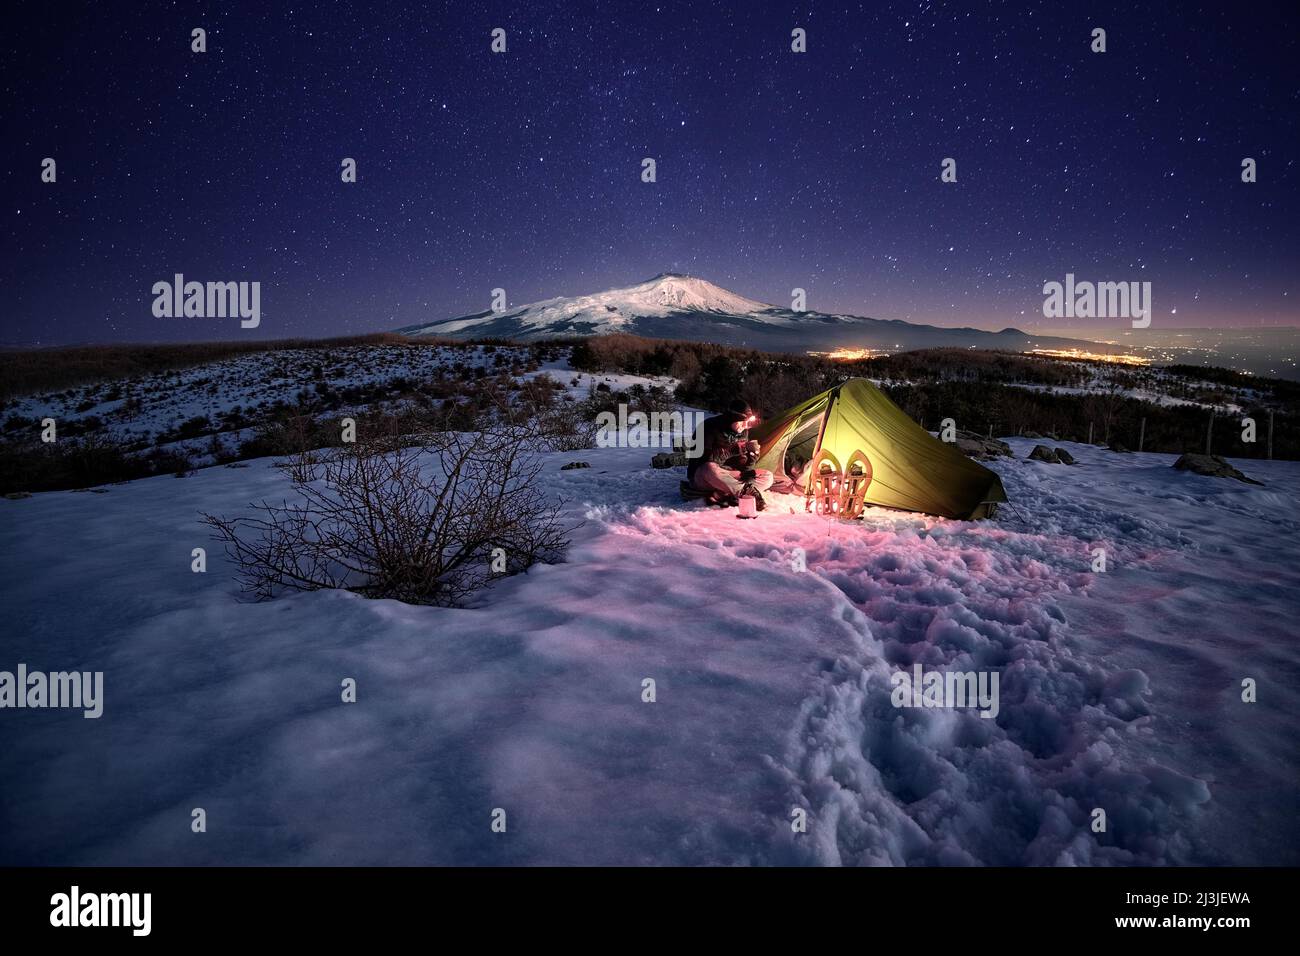 Uomo che riposa vicino alla sua tenda illuminata sulla neve di notte sotto il cielo stellato, sullo sfondo il Monte Etna dal Parco dei Nebrodi, in Sicilia Foto Stock